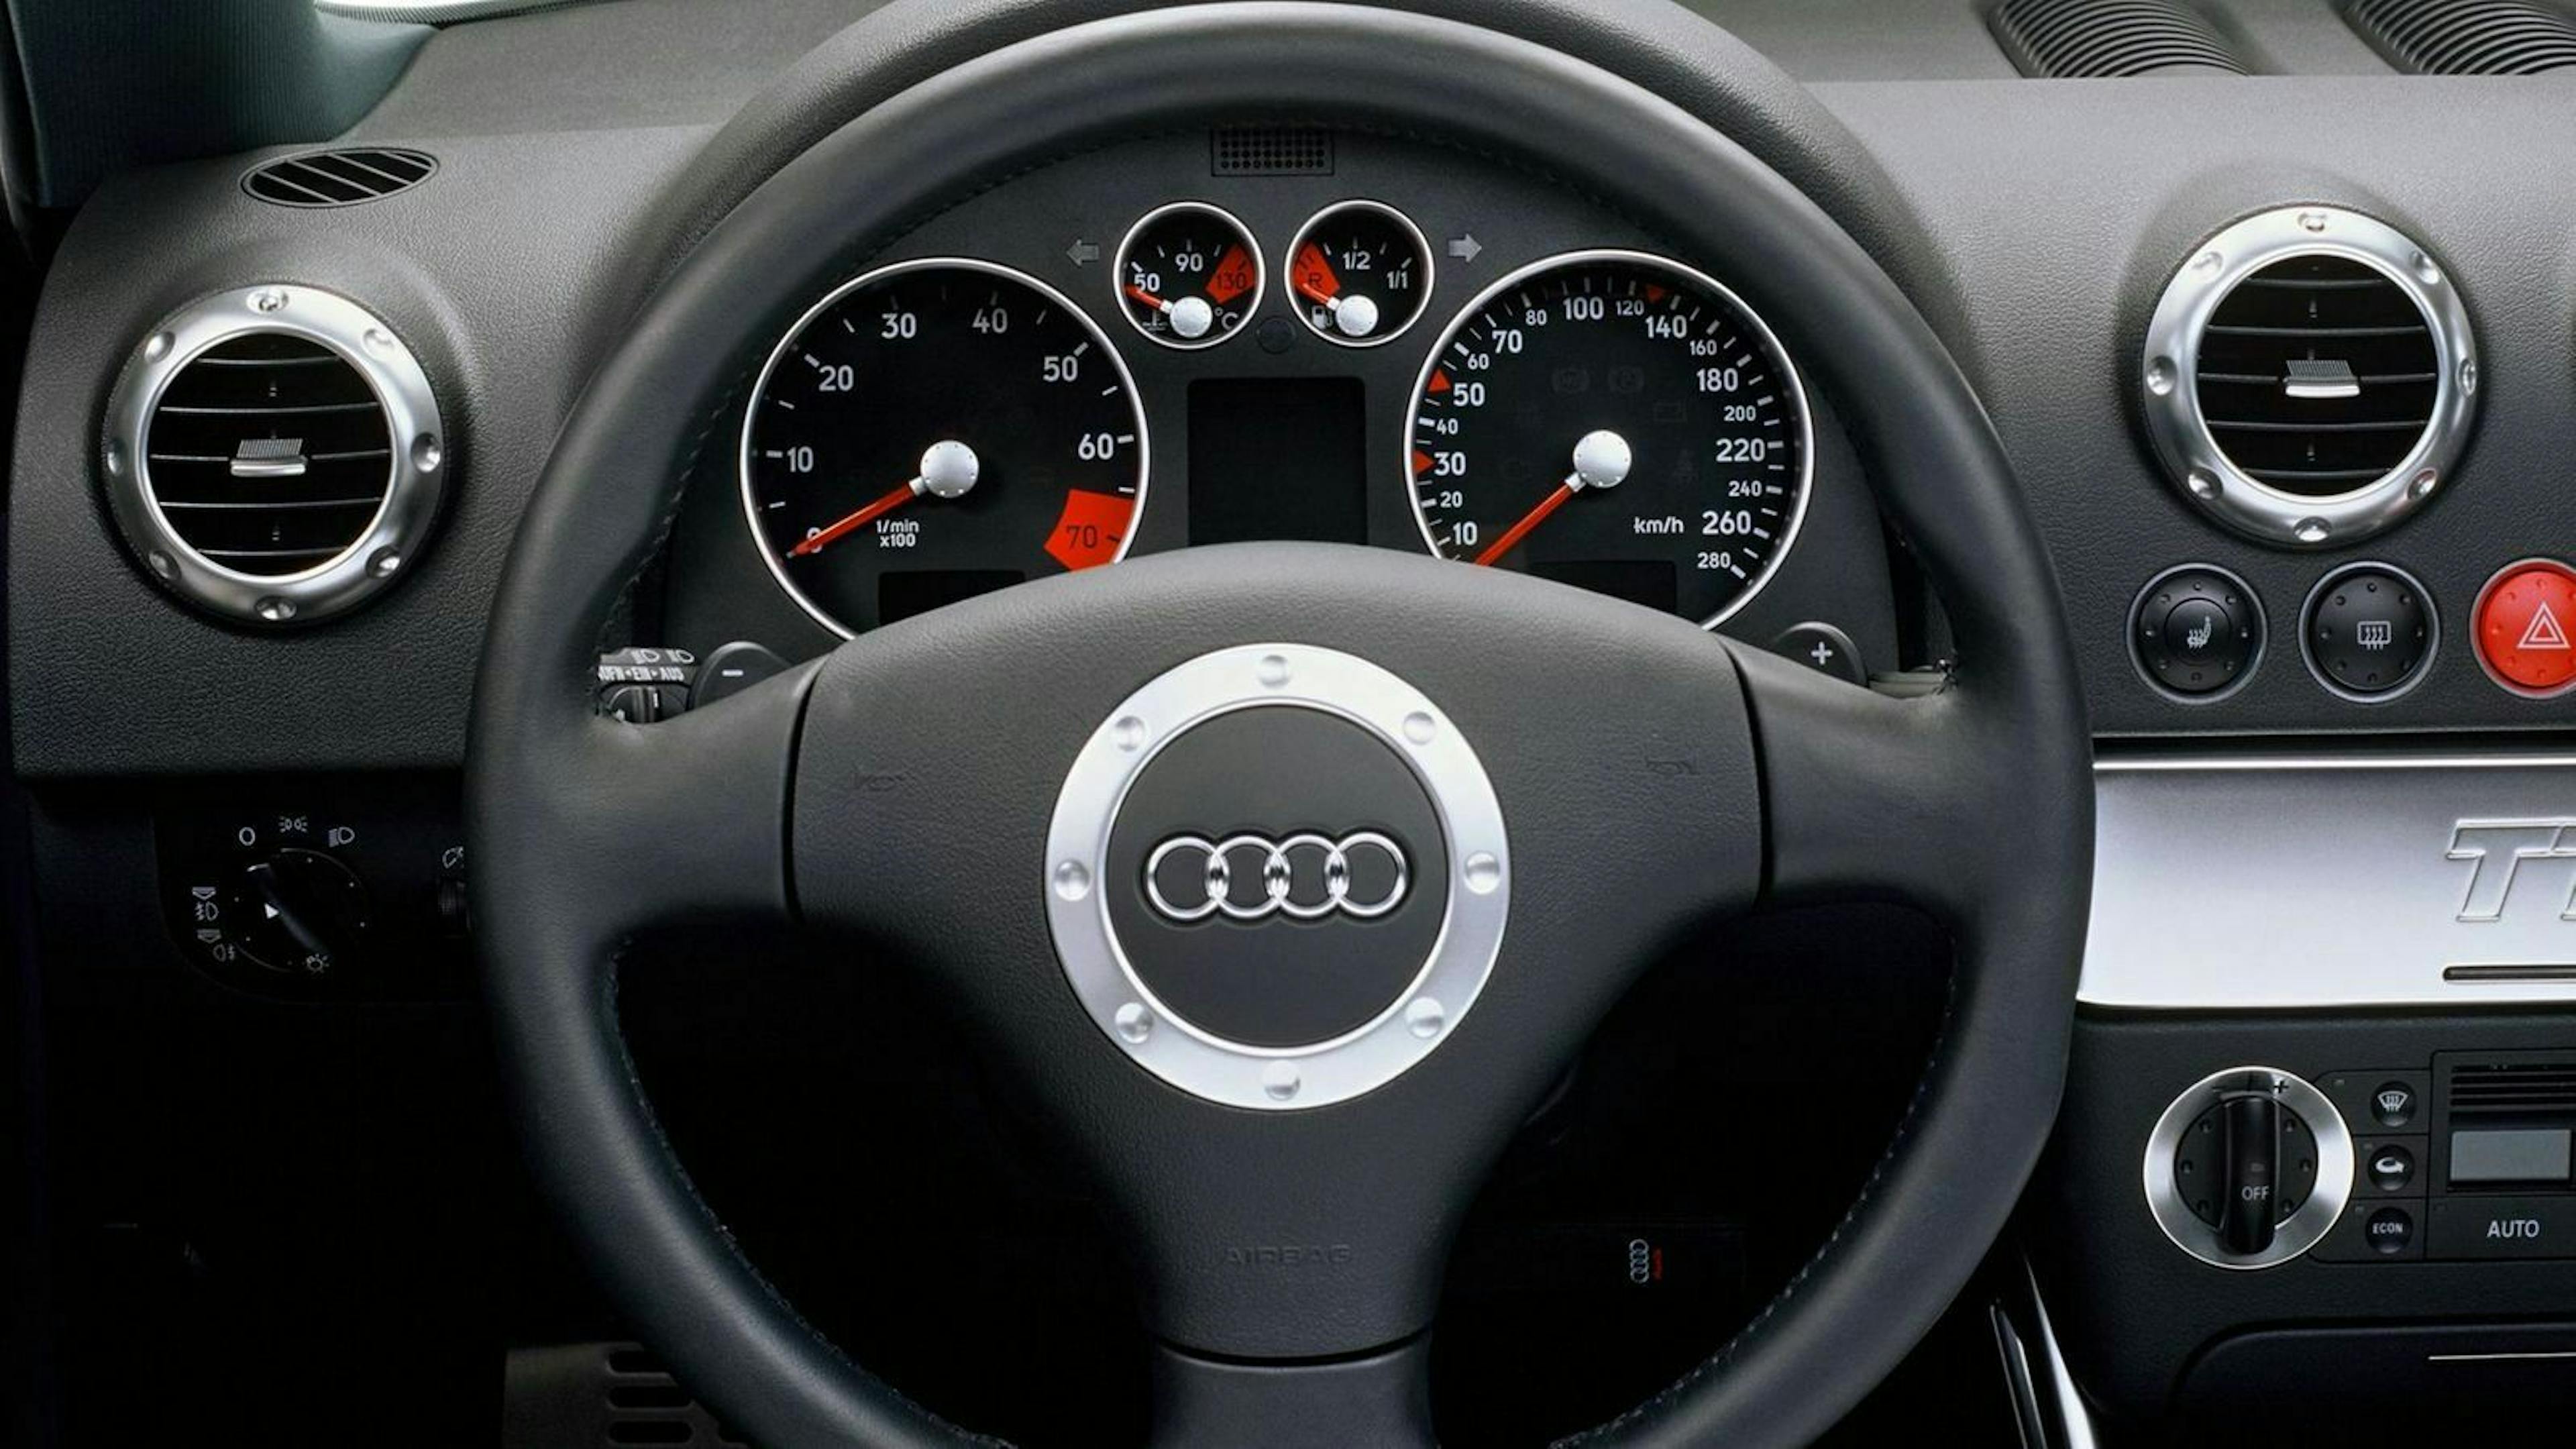 Zu sehen ist das Lenkrad des Audi TT 8N Coupé